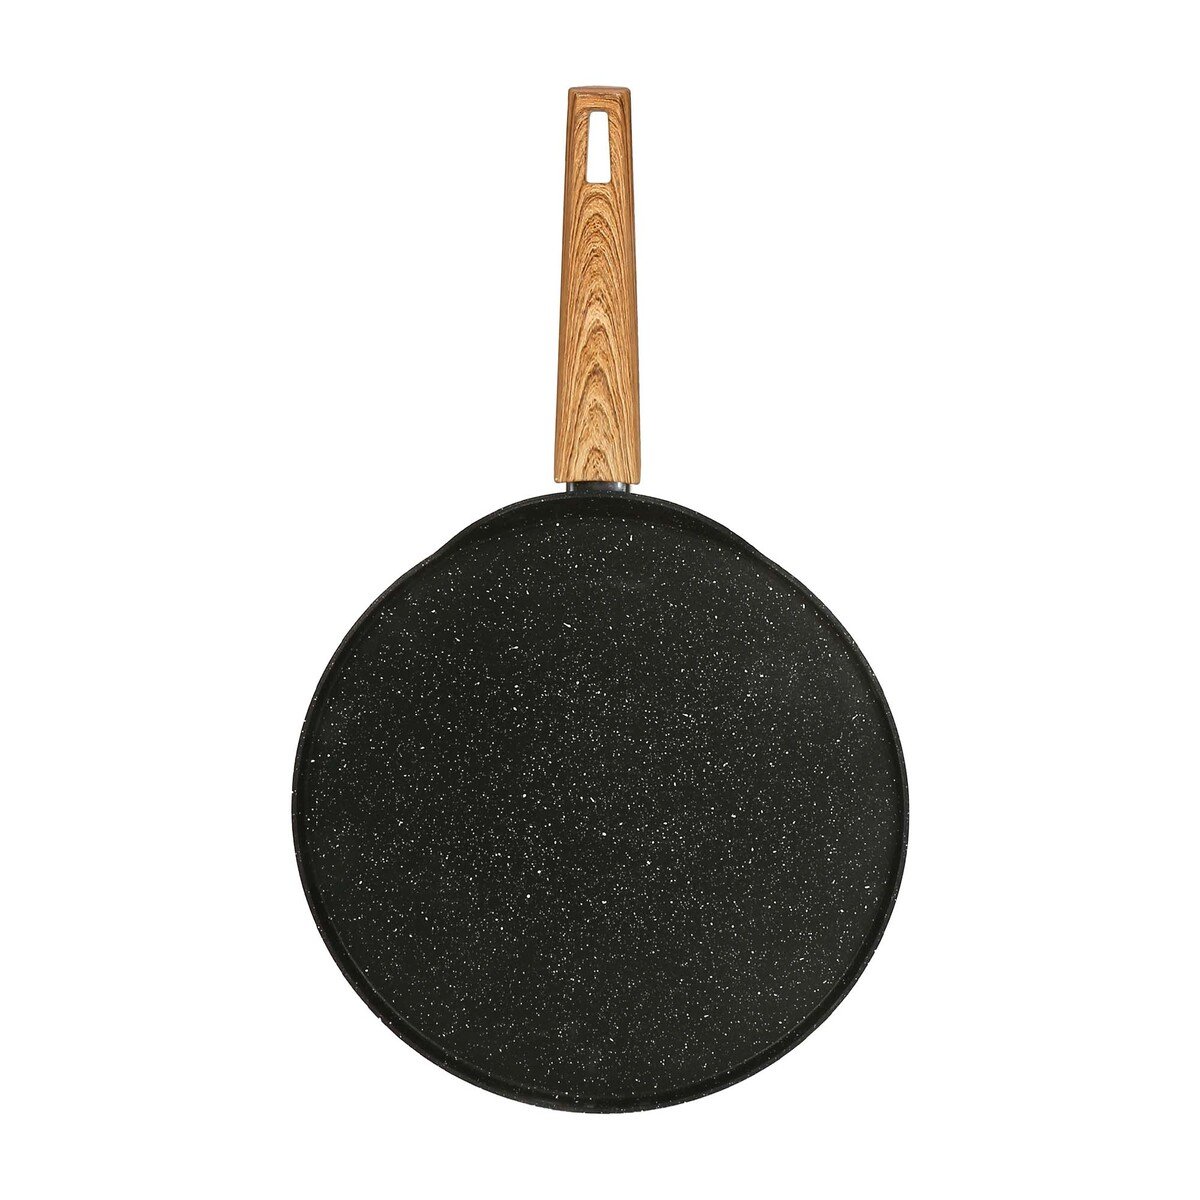 Gigilli Aluminium Crepe Pan, 30 cm